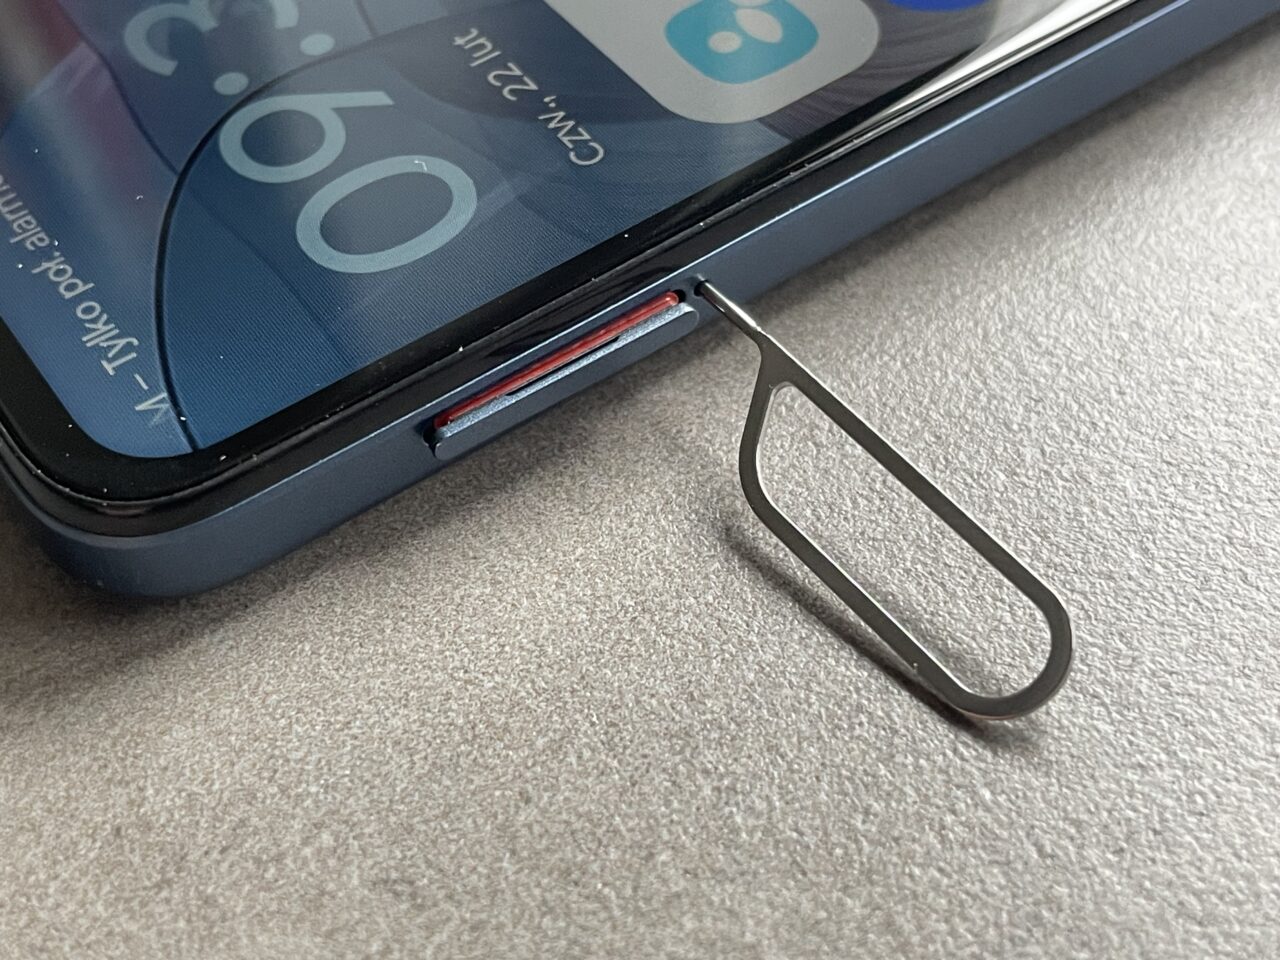 Wyjmowacz karty SIM leży obok zamkniętej szufladki na kartę SIM w smartfonie, który znajduje się na szarym blacie.